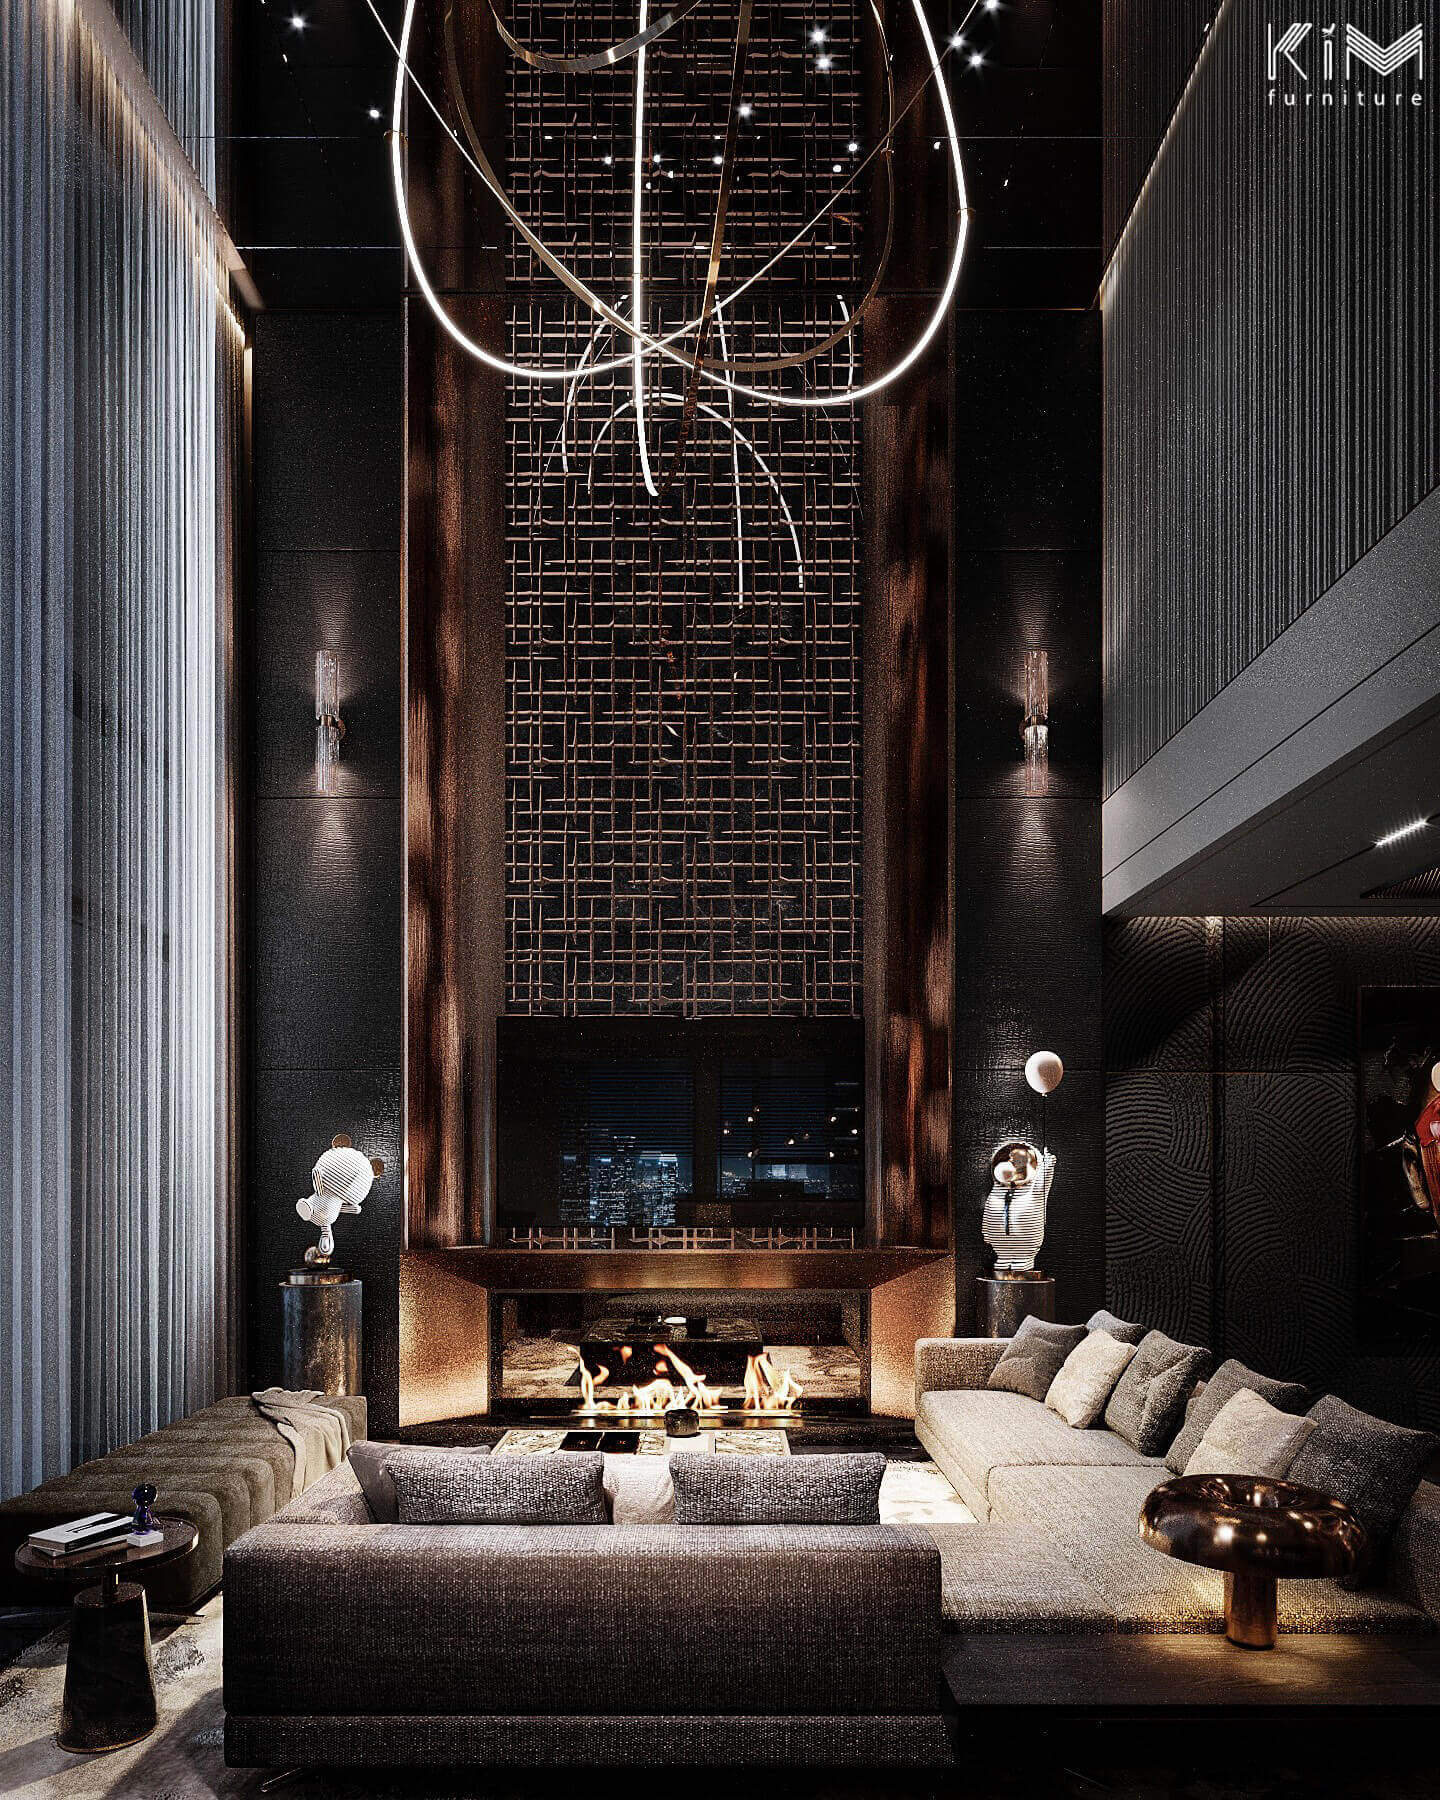 Trần gương phòng khách kết hợp đèn âm trần tạo hiệu ứng như bầu trời sao tuyệt đẹp - Thiết kế Penthouse Ancora của KIM furniture